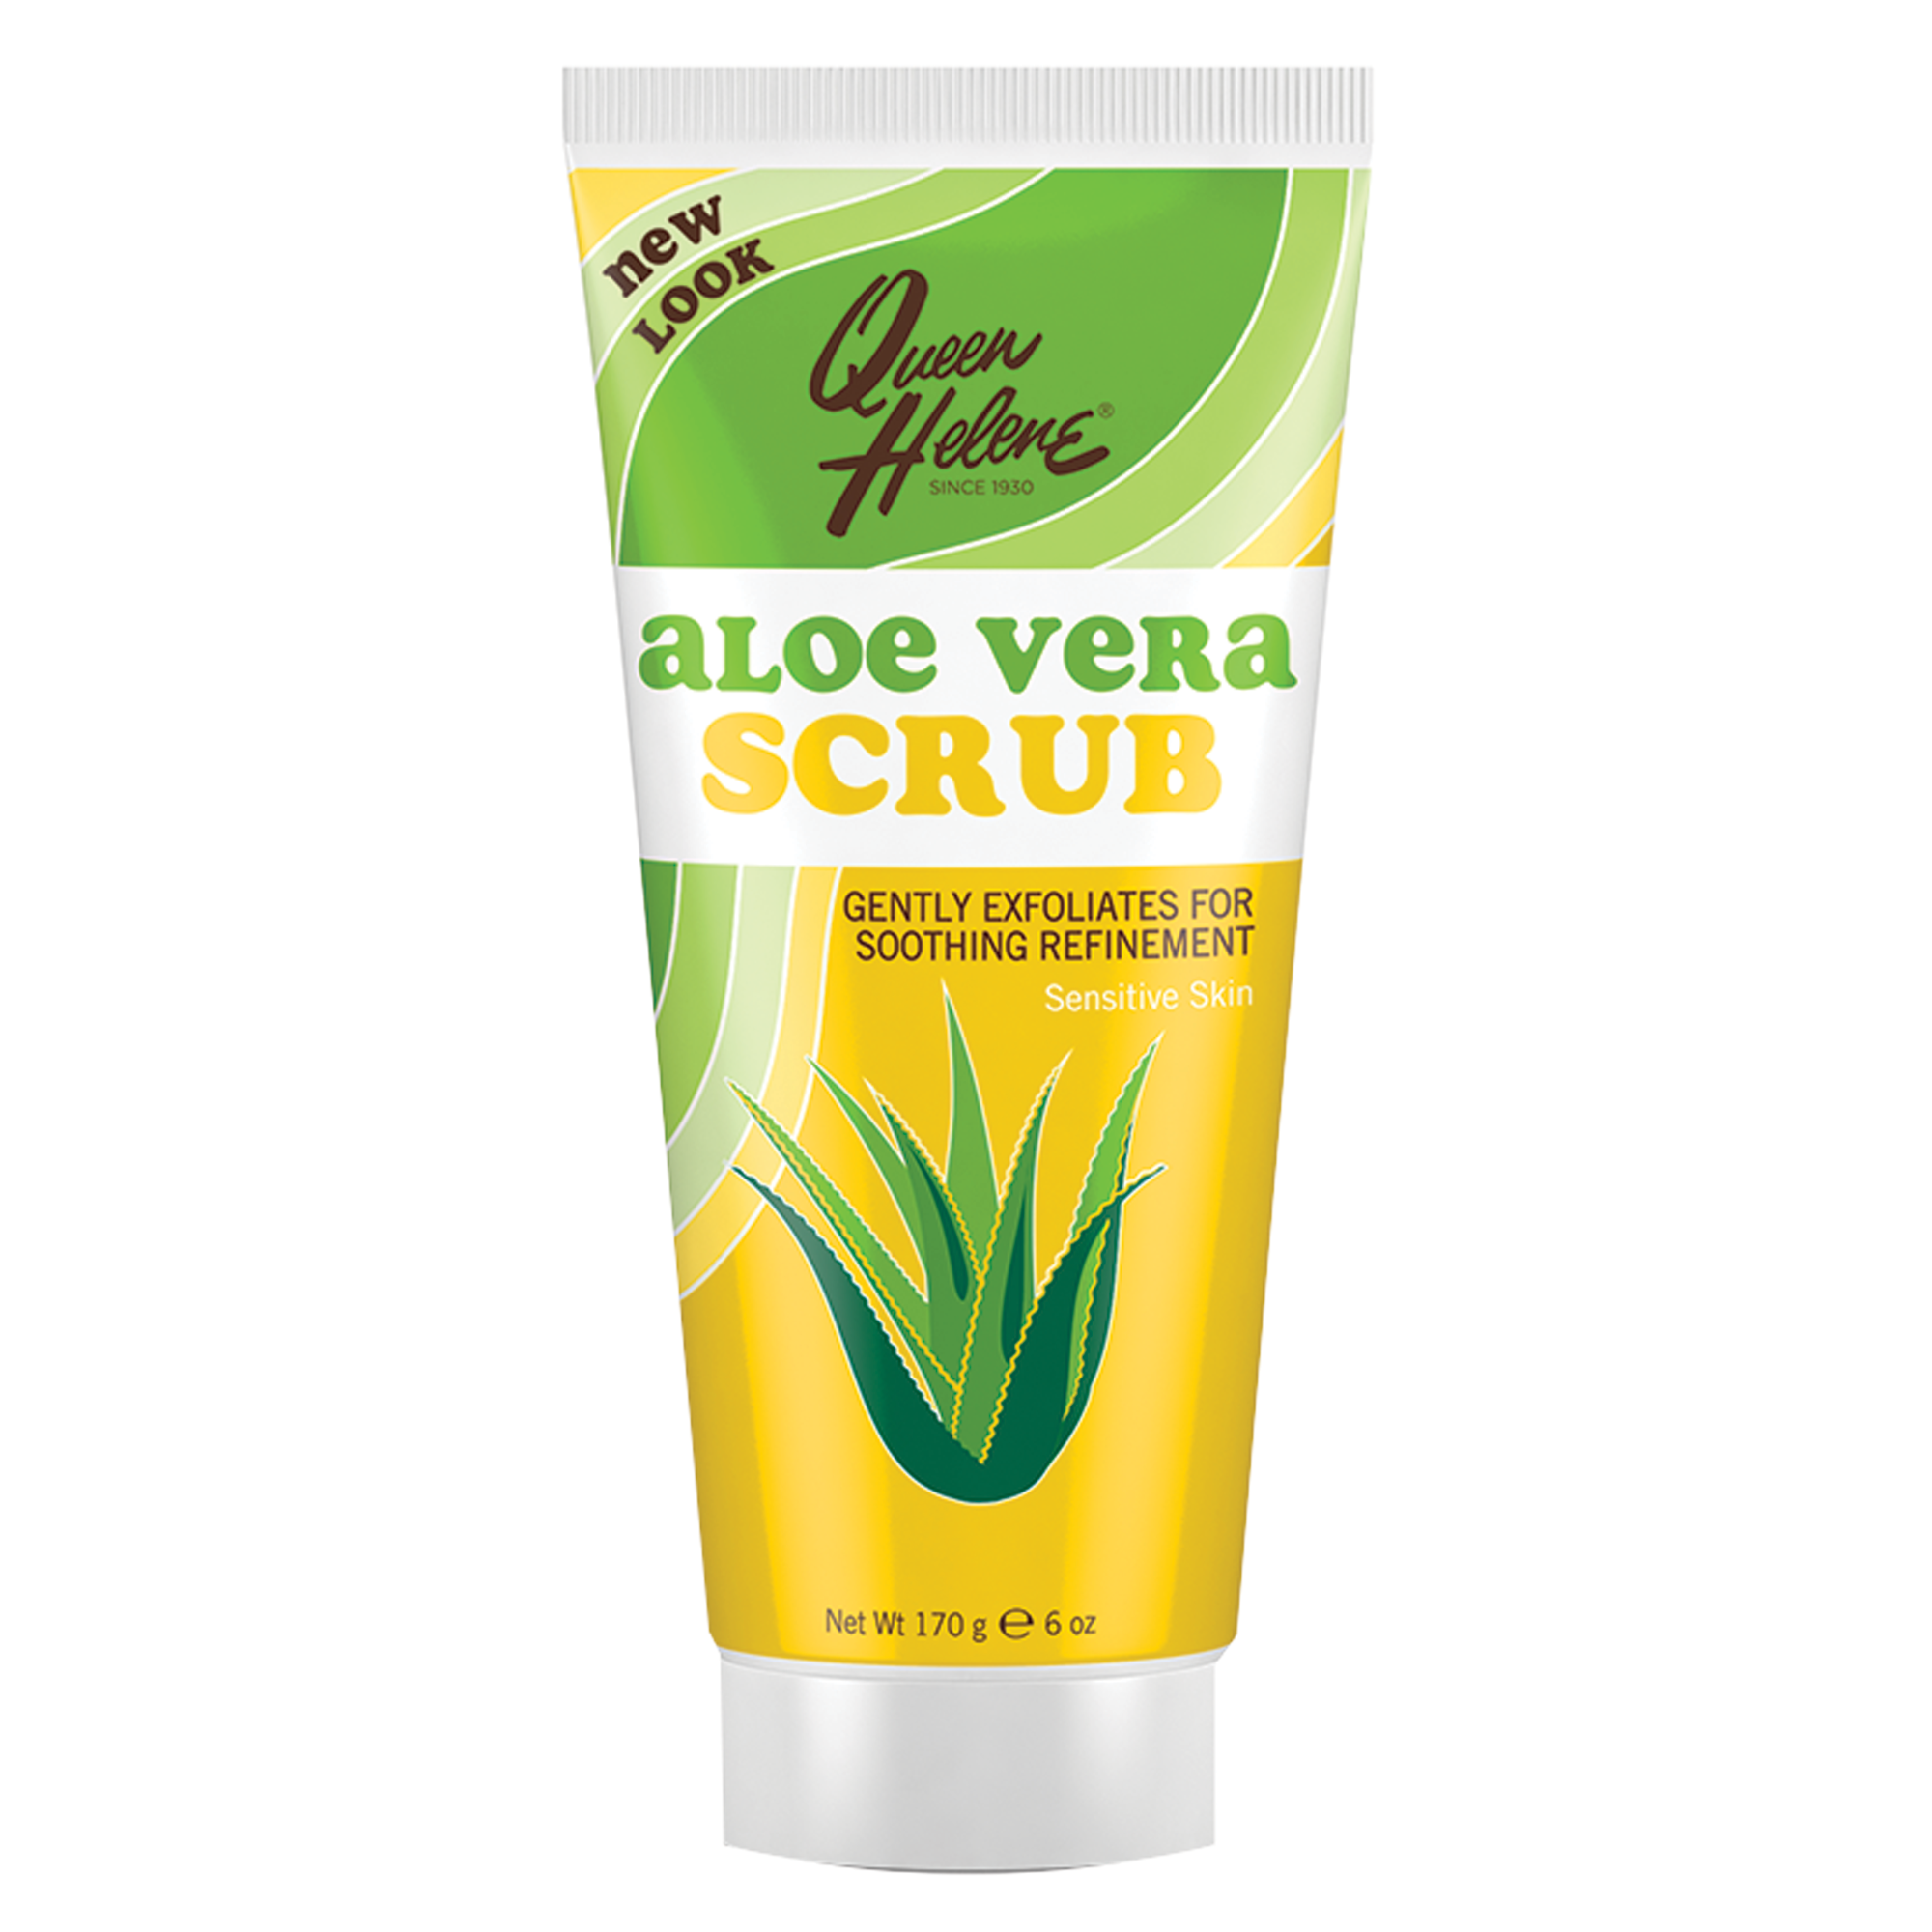 Aloe Vera Scrub for Sensitive Skin